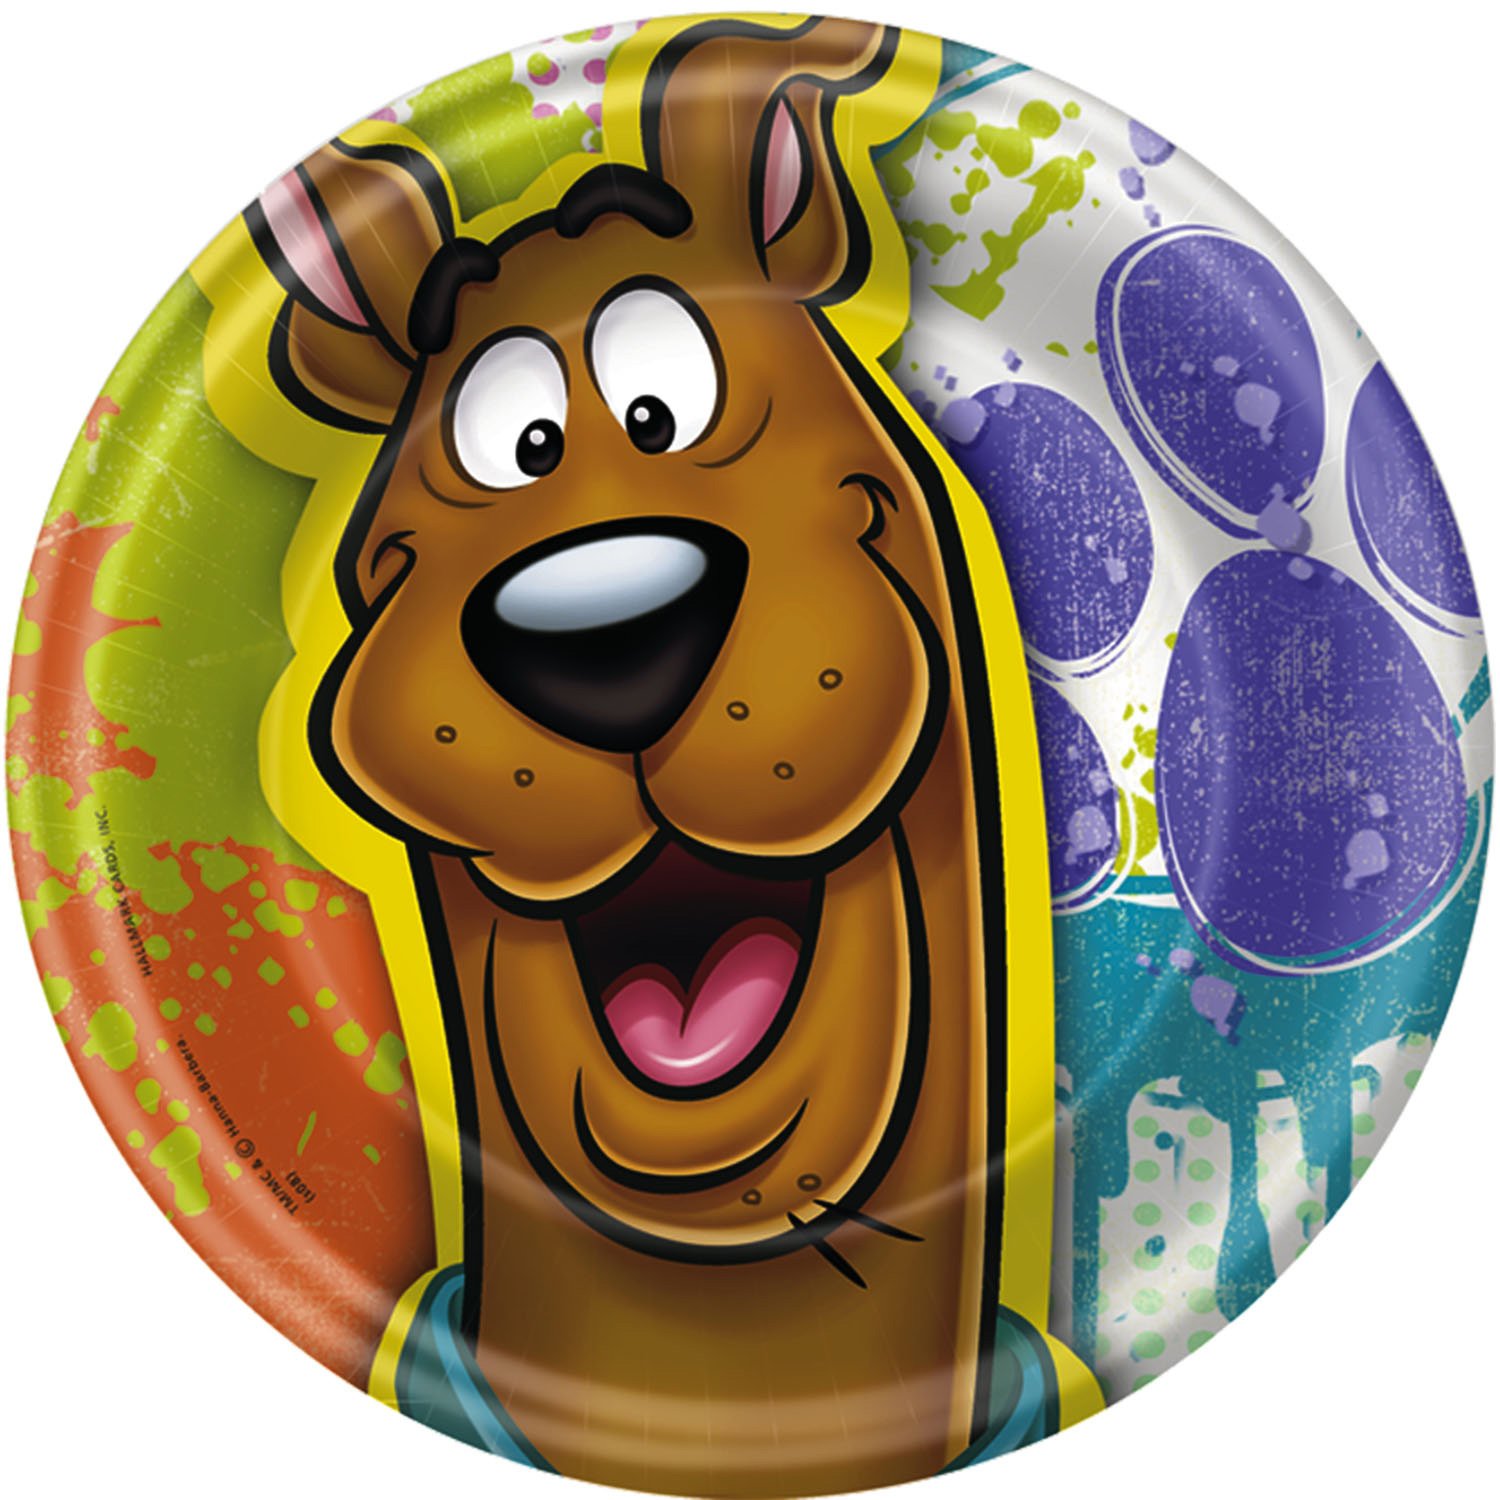 Scooby Doo Pictures Cartoons Wallpaper Videos